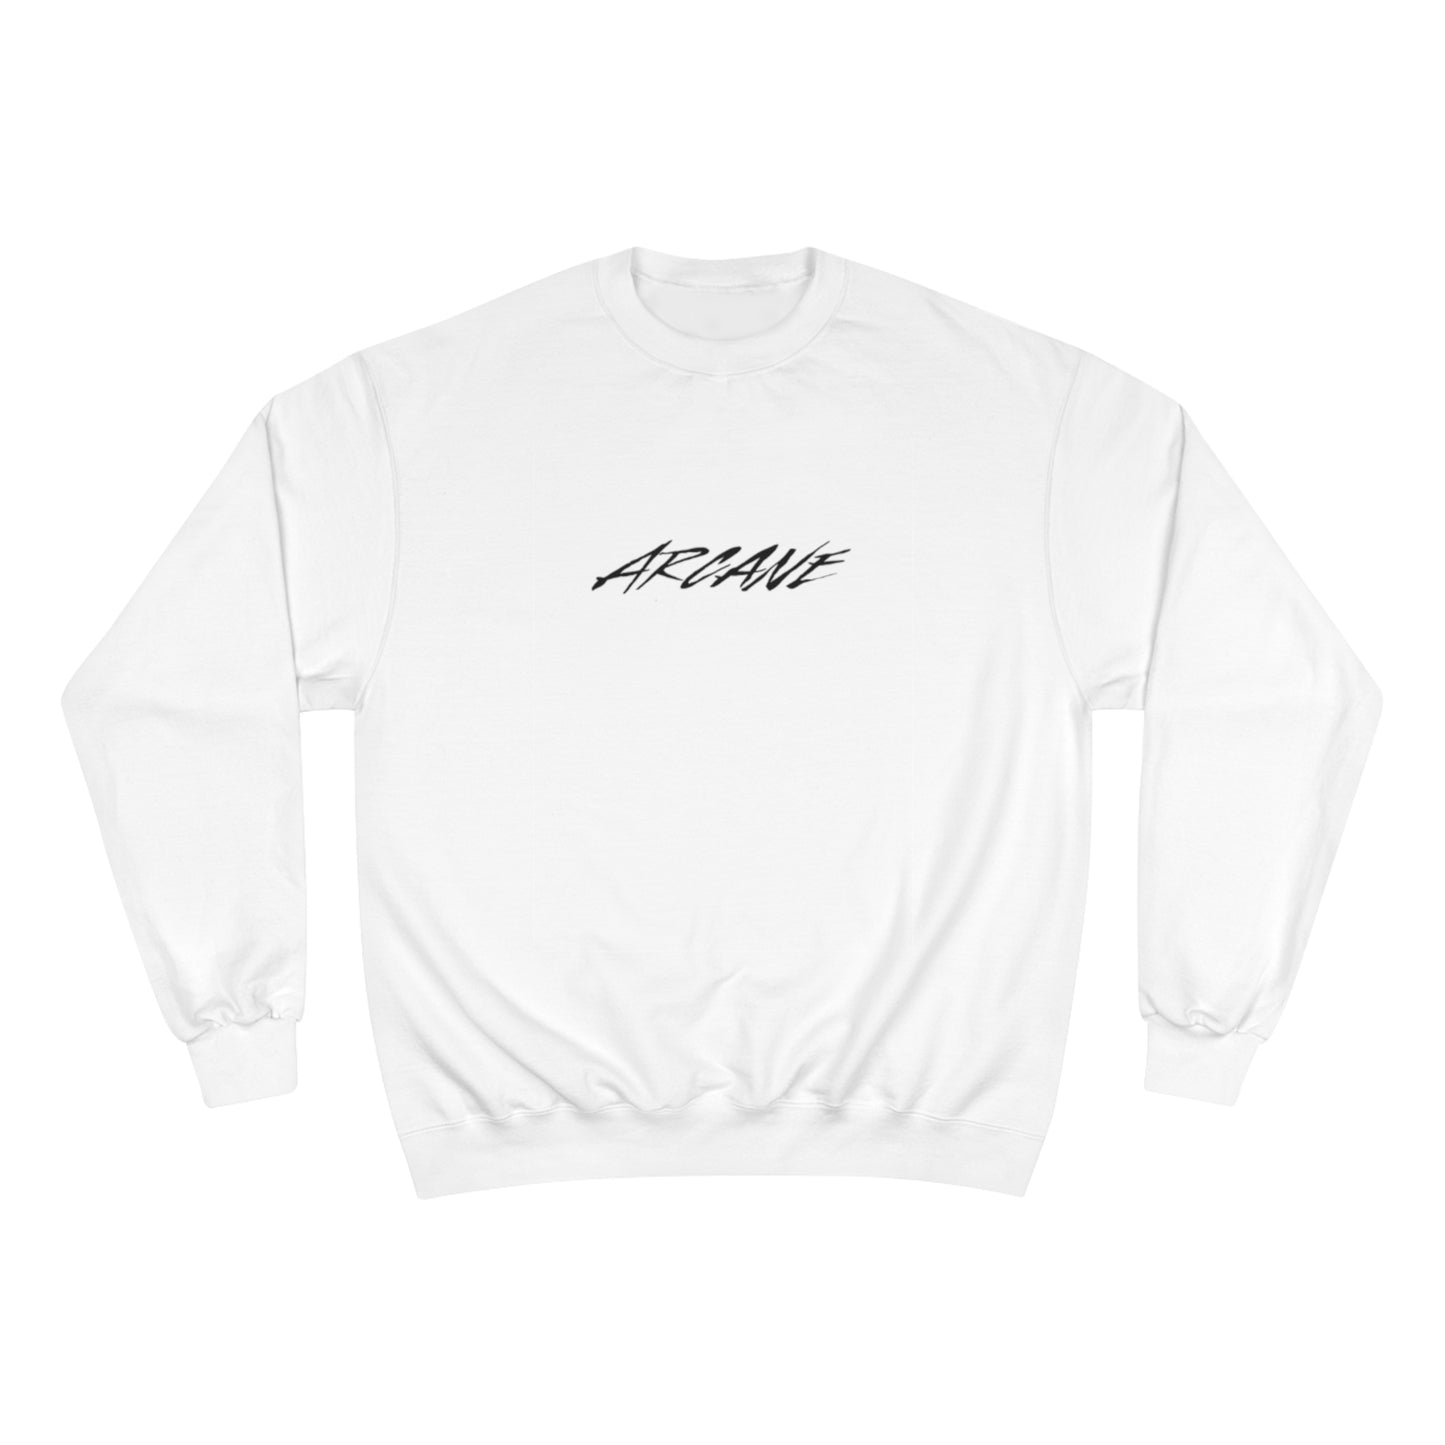 Arcane x Eco Eclectic - Champion Sweatshirt